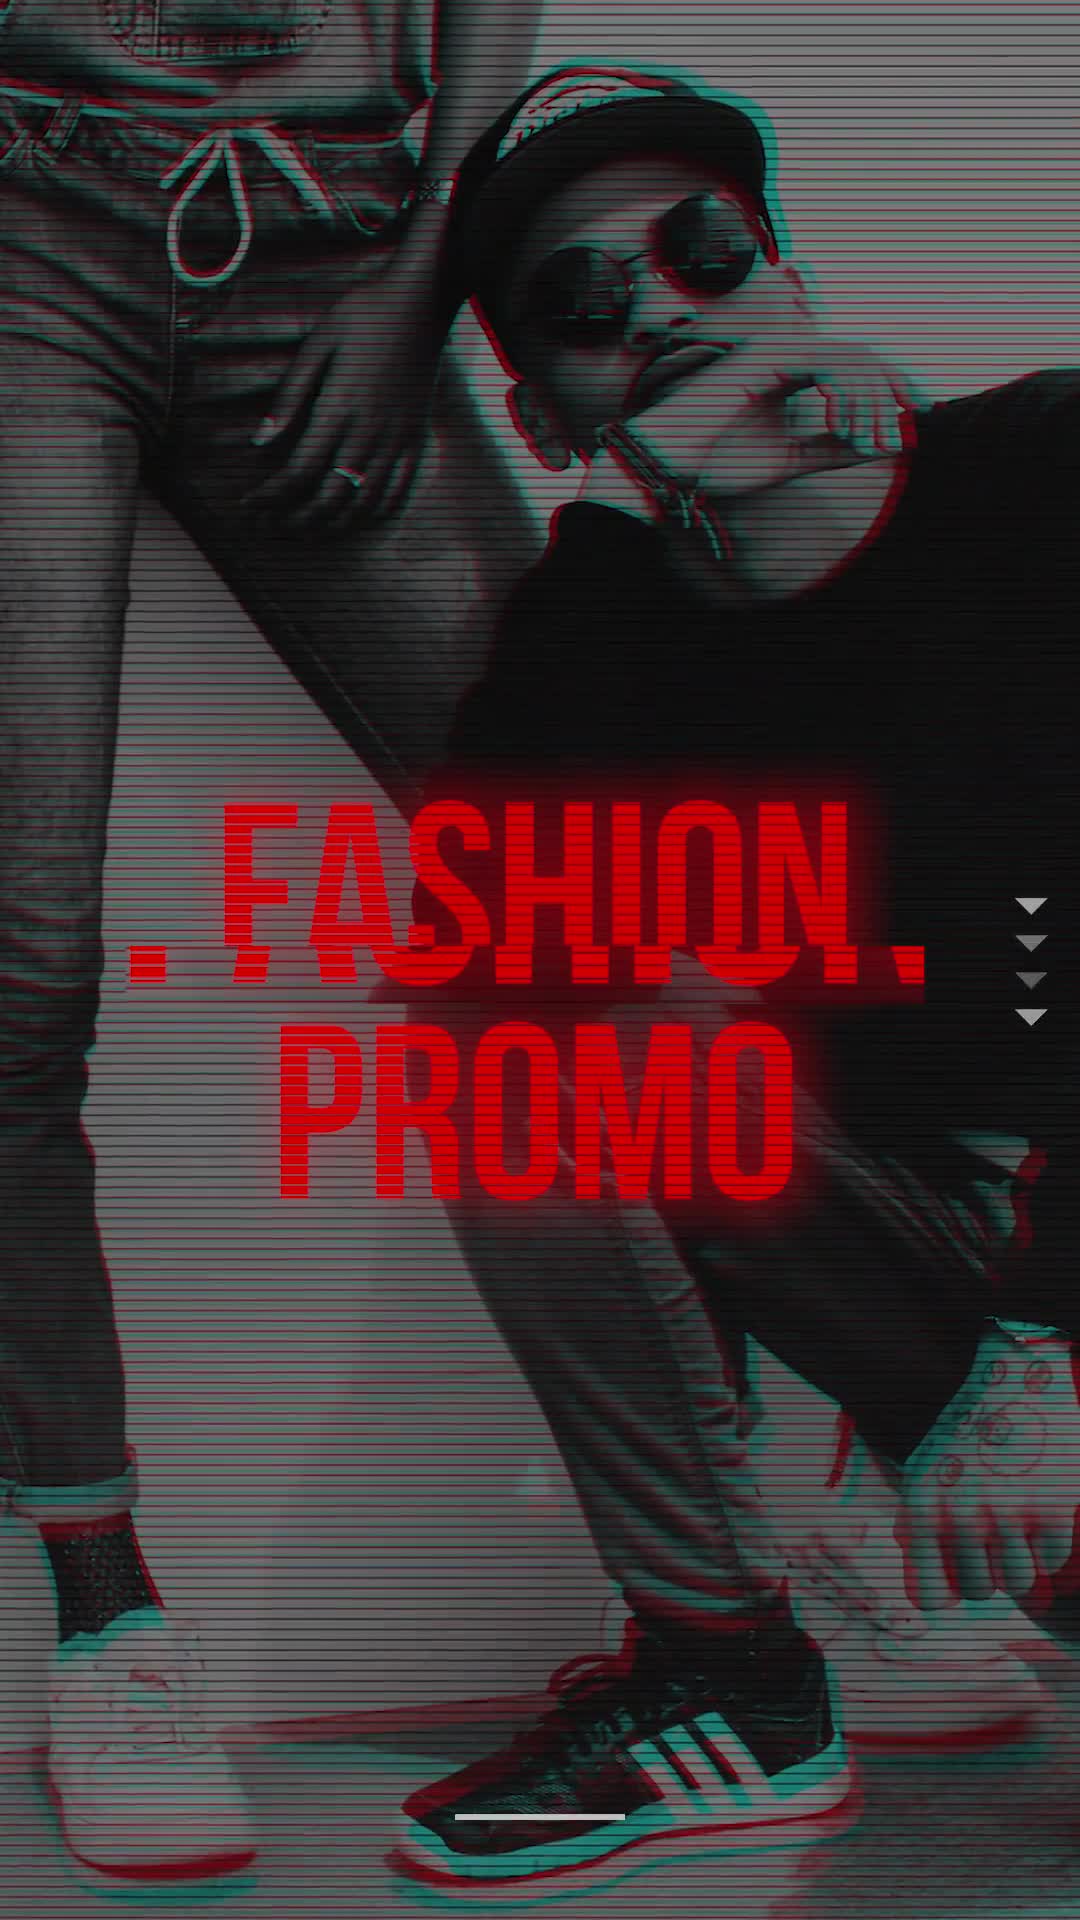 Fashion Glitch Promo (Vertical) Videohive 23889283 Premiere Pro Image 1